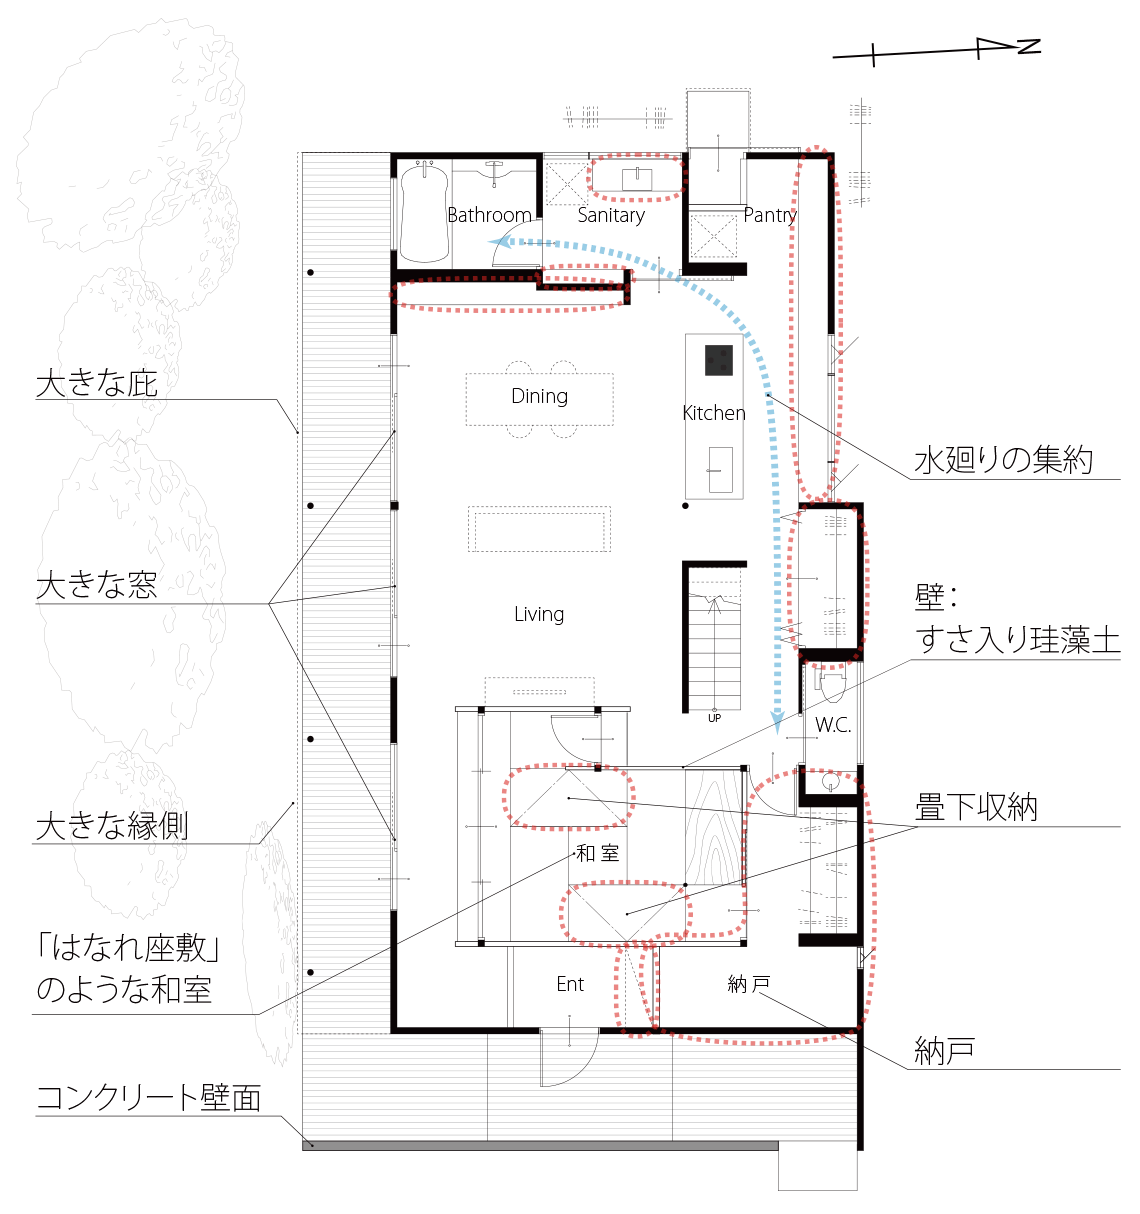 瓦の家 1F平面図